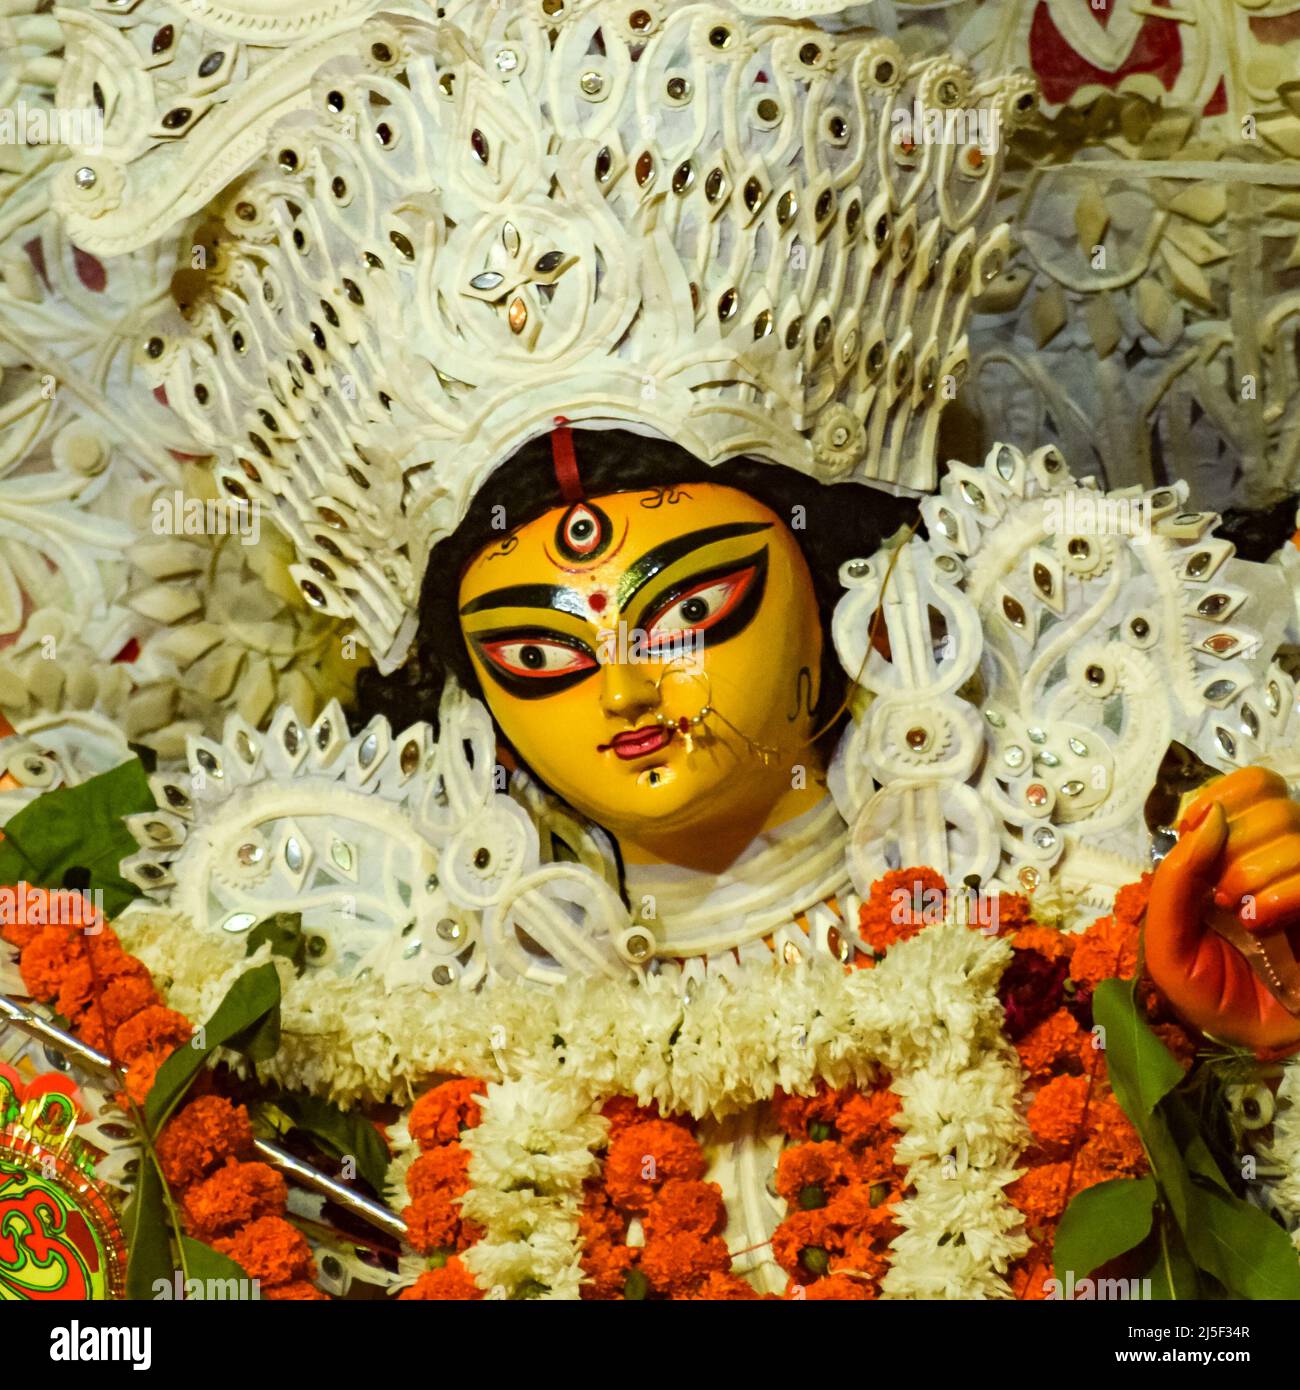 La déesse Durga avec une vue traditionnelle en gros plan dans un sud Kolkata Durga Puja, Durga Puja Idol, Un des plus grands festivals hindous Navratri en Inde Banque D'Images